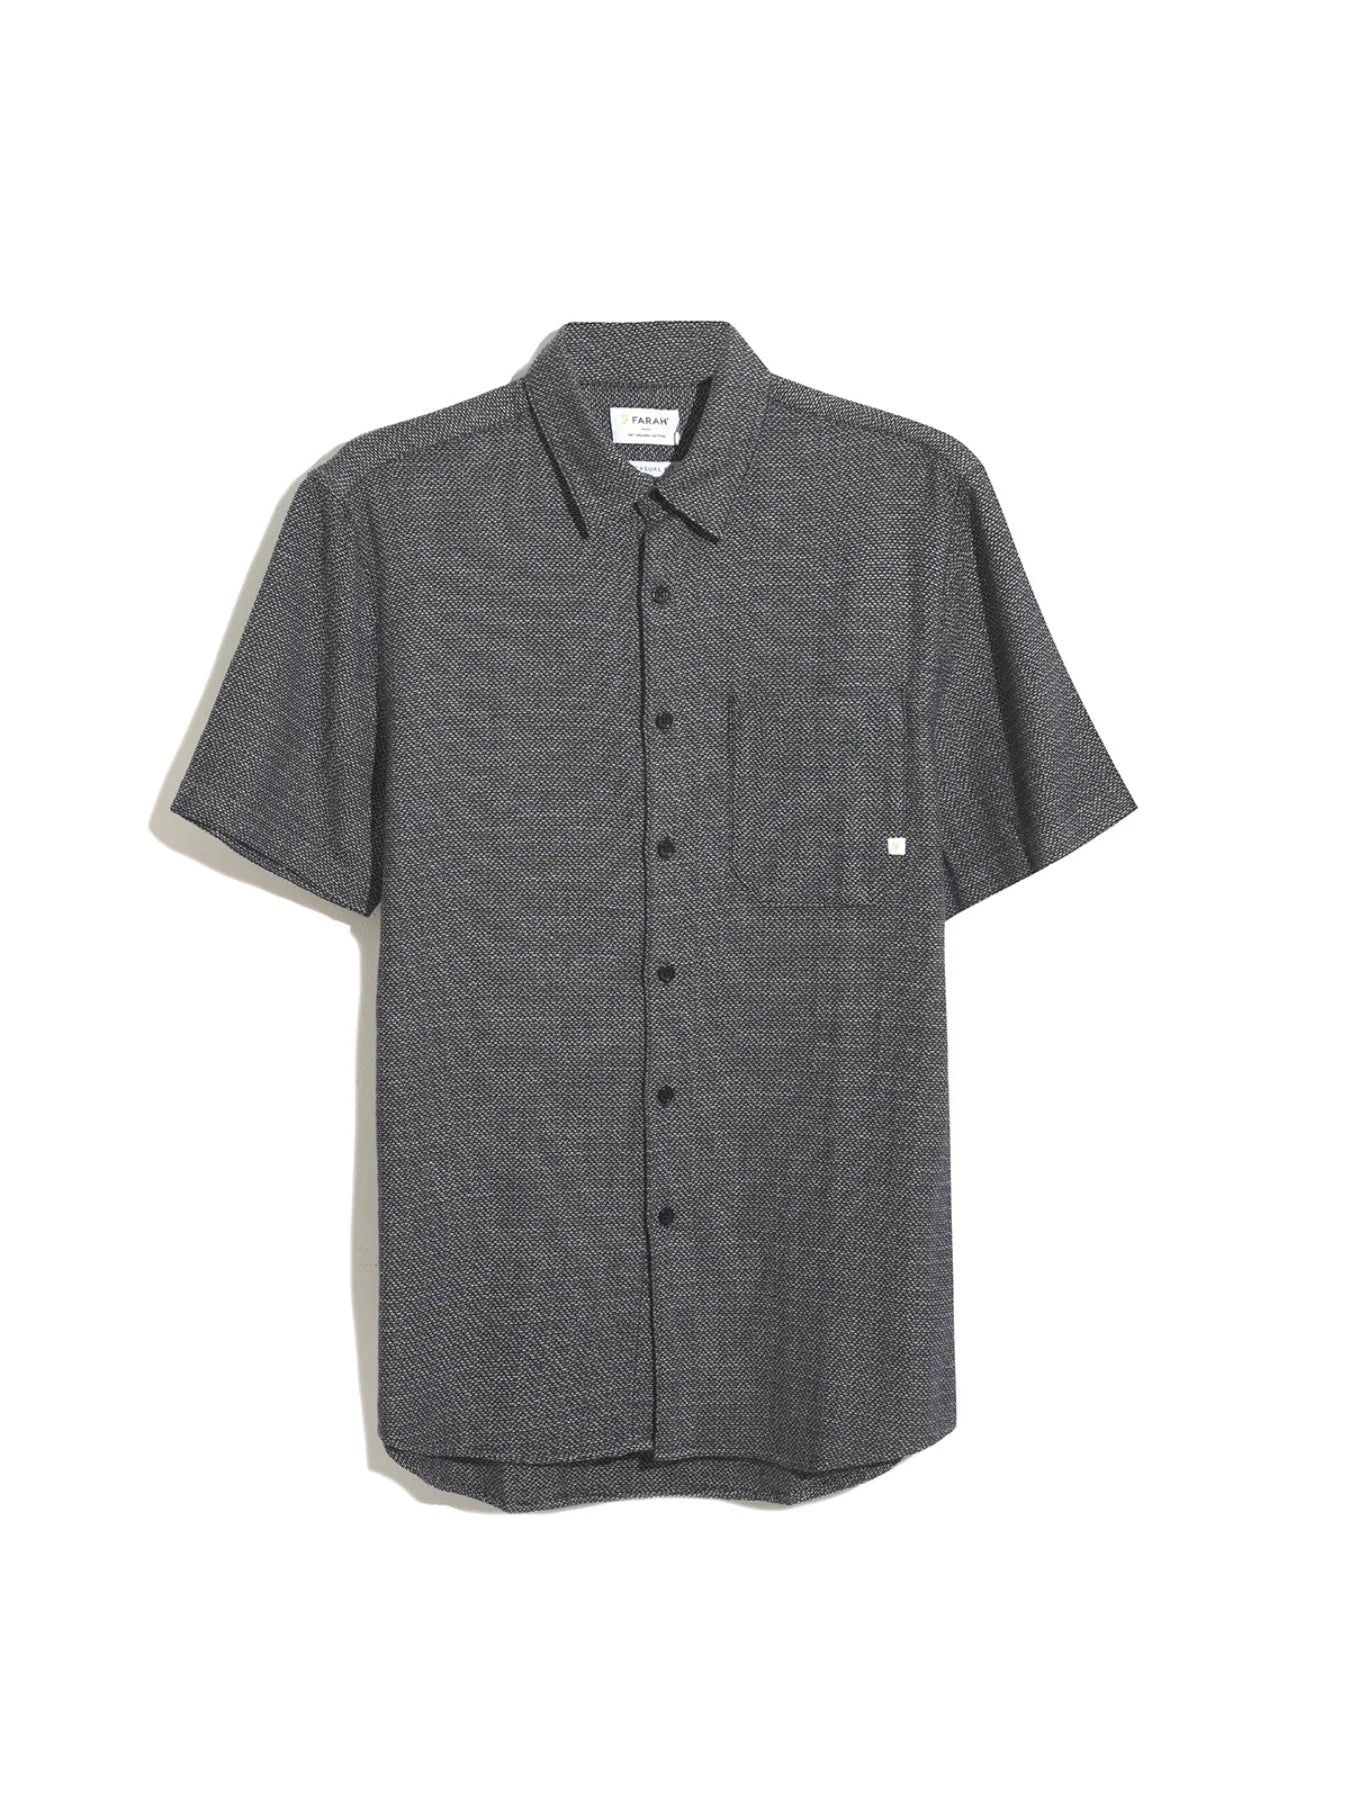 Farah Denzie Jacquard Short Sleeve Shirt / True Navy